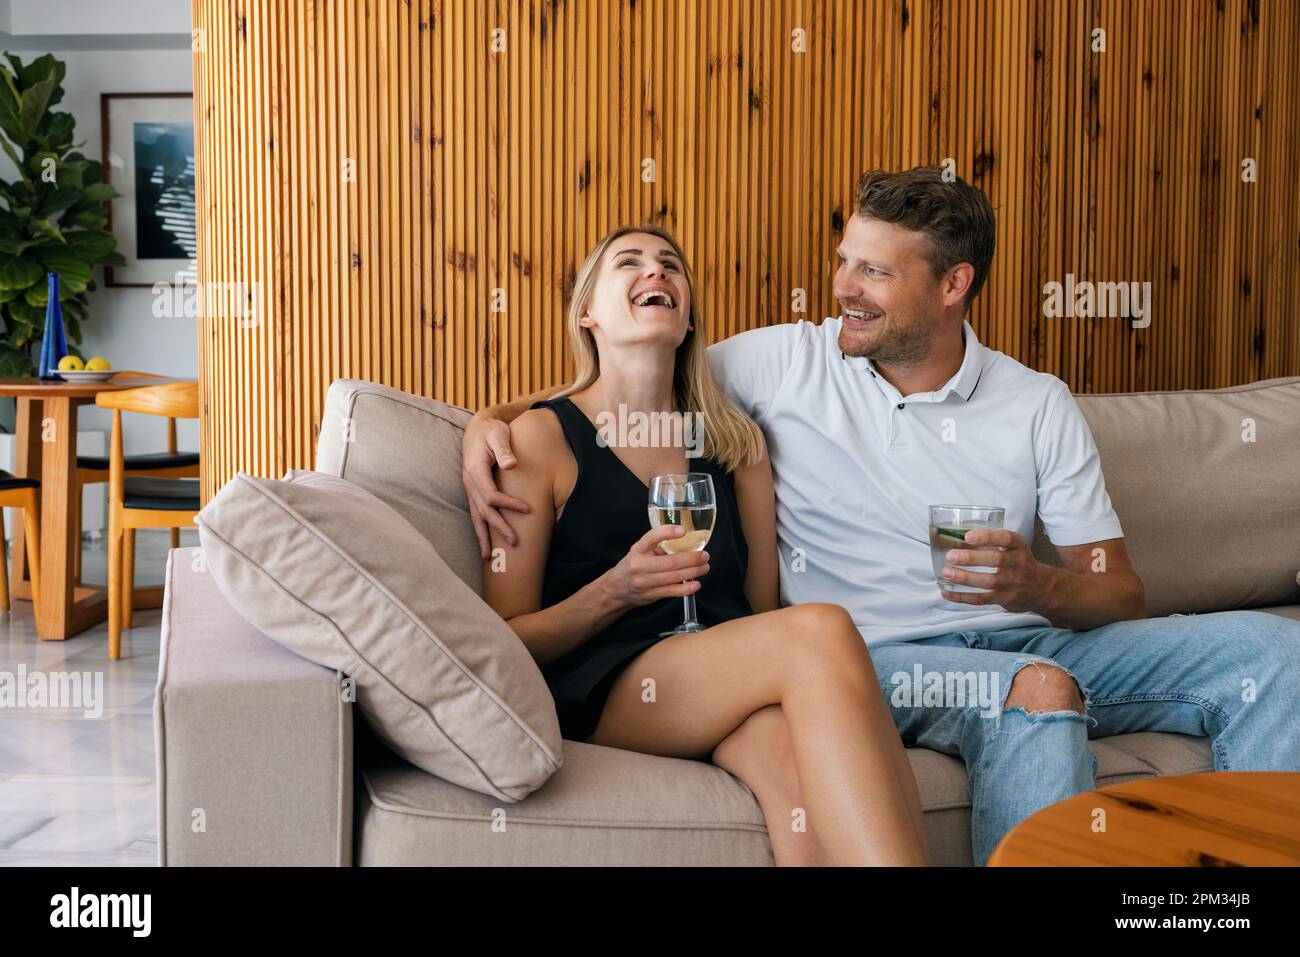 giovane coppia datazione. uomo e donna seduti in divano e flirtare mentre beve un cocktail Foto Stock